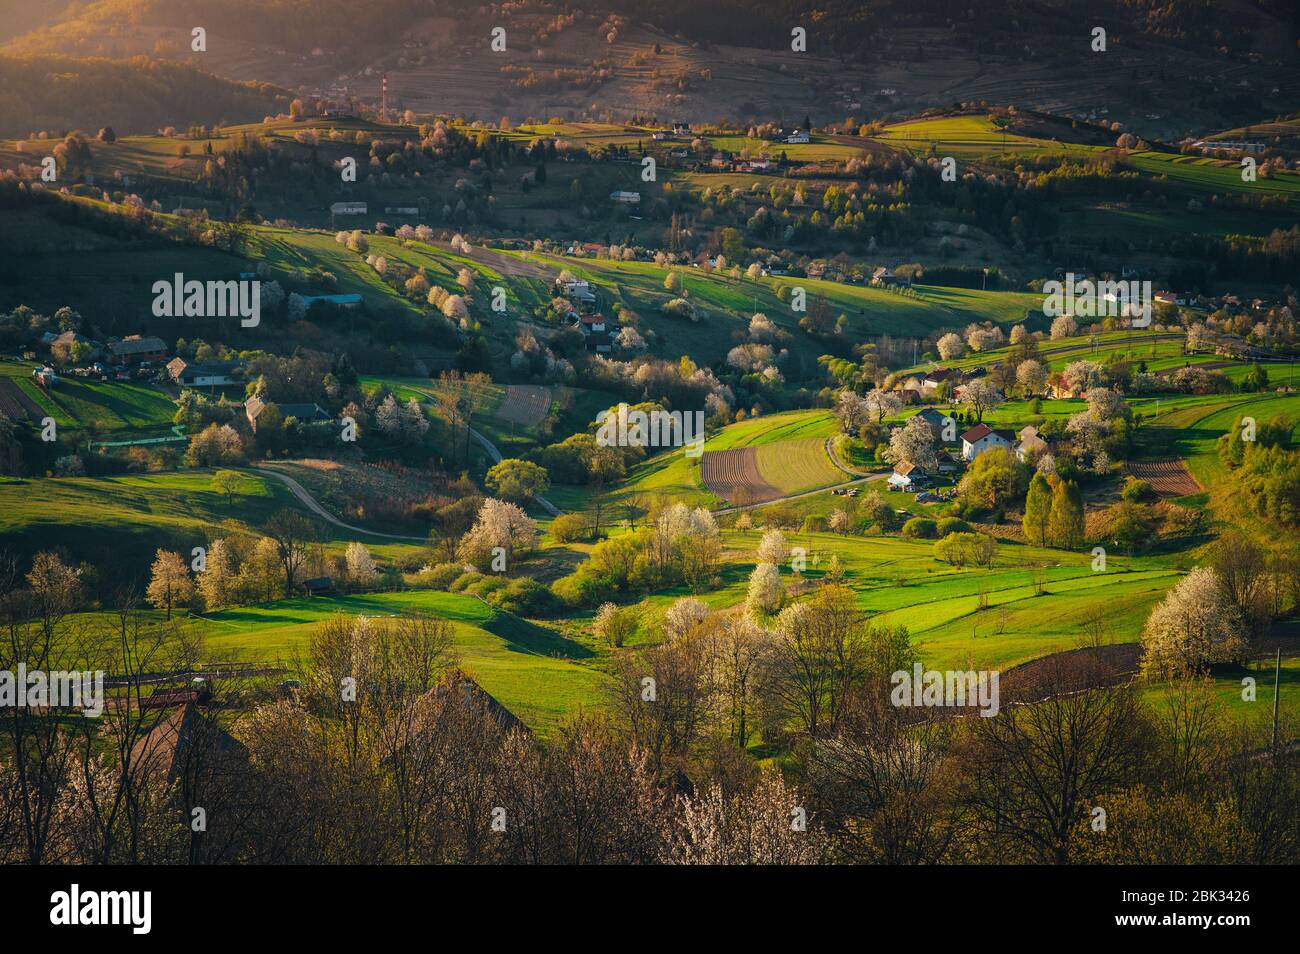 Alba primaverile in un paesaggio rurale con ciliegie fiorite, campi verdi e piccole case. I primi raggi del sole nel villaggio Hrinov Foto Stock